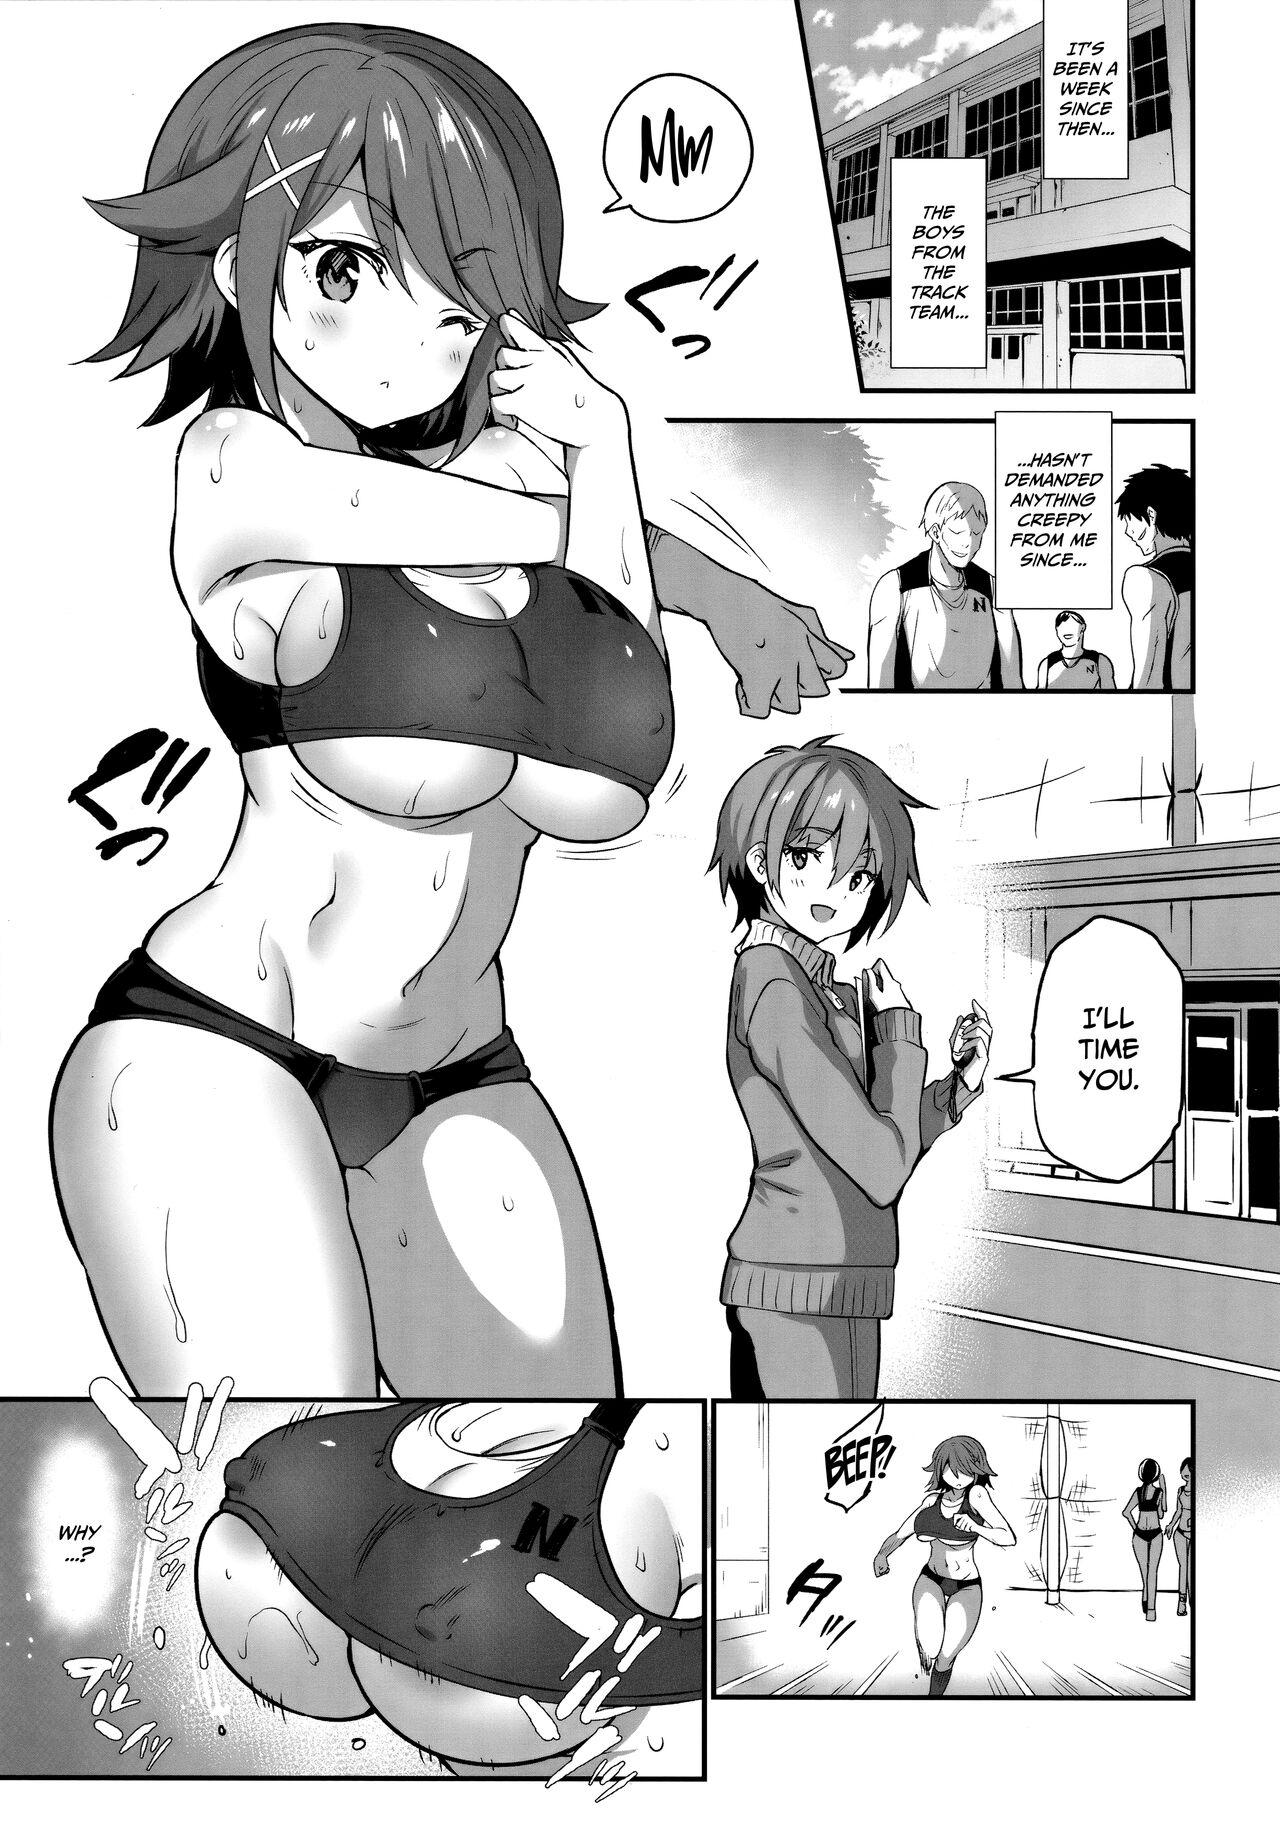 Suckingdick Gakkou de Seishun! 17 - Original Punishment - Page 2